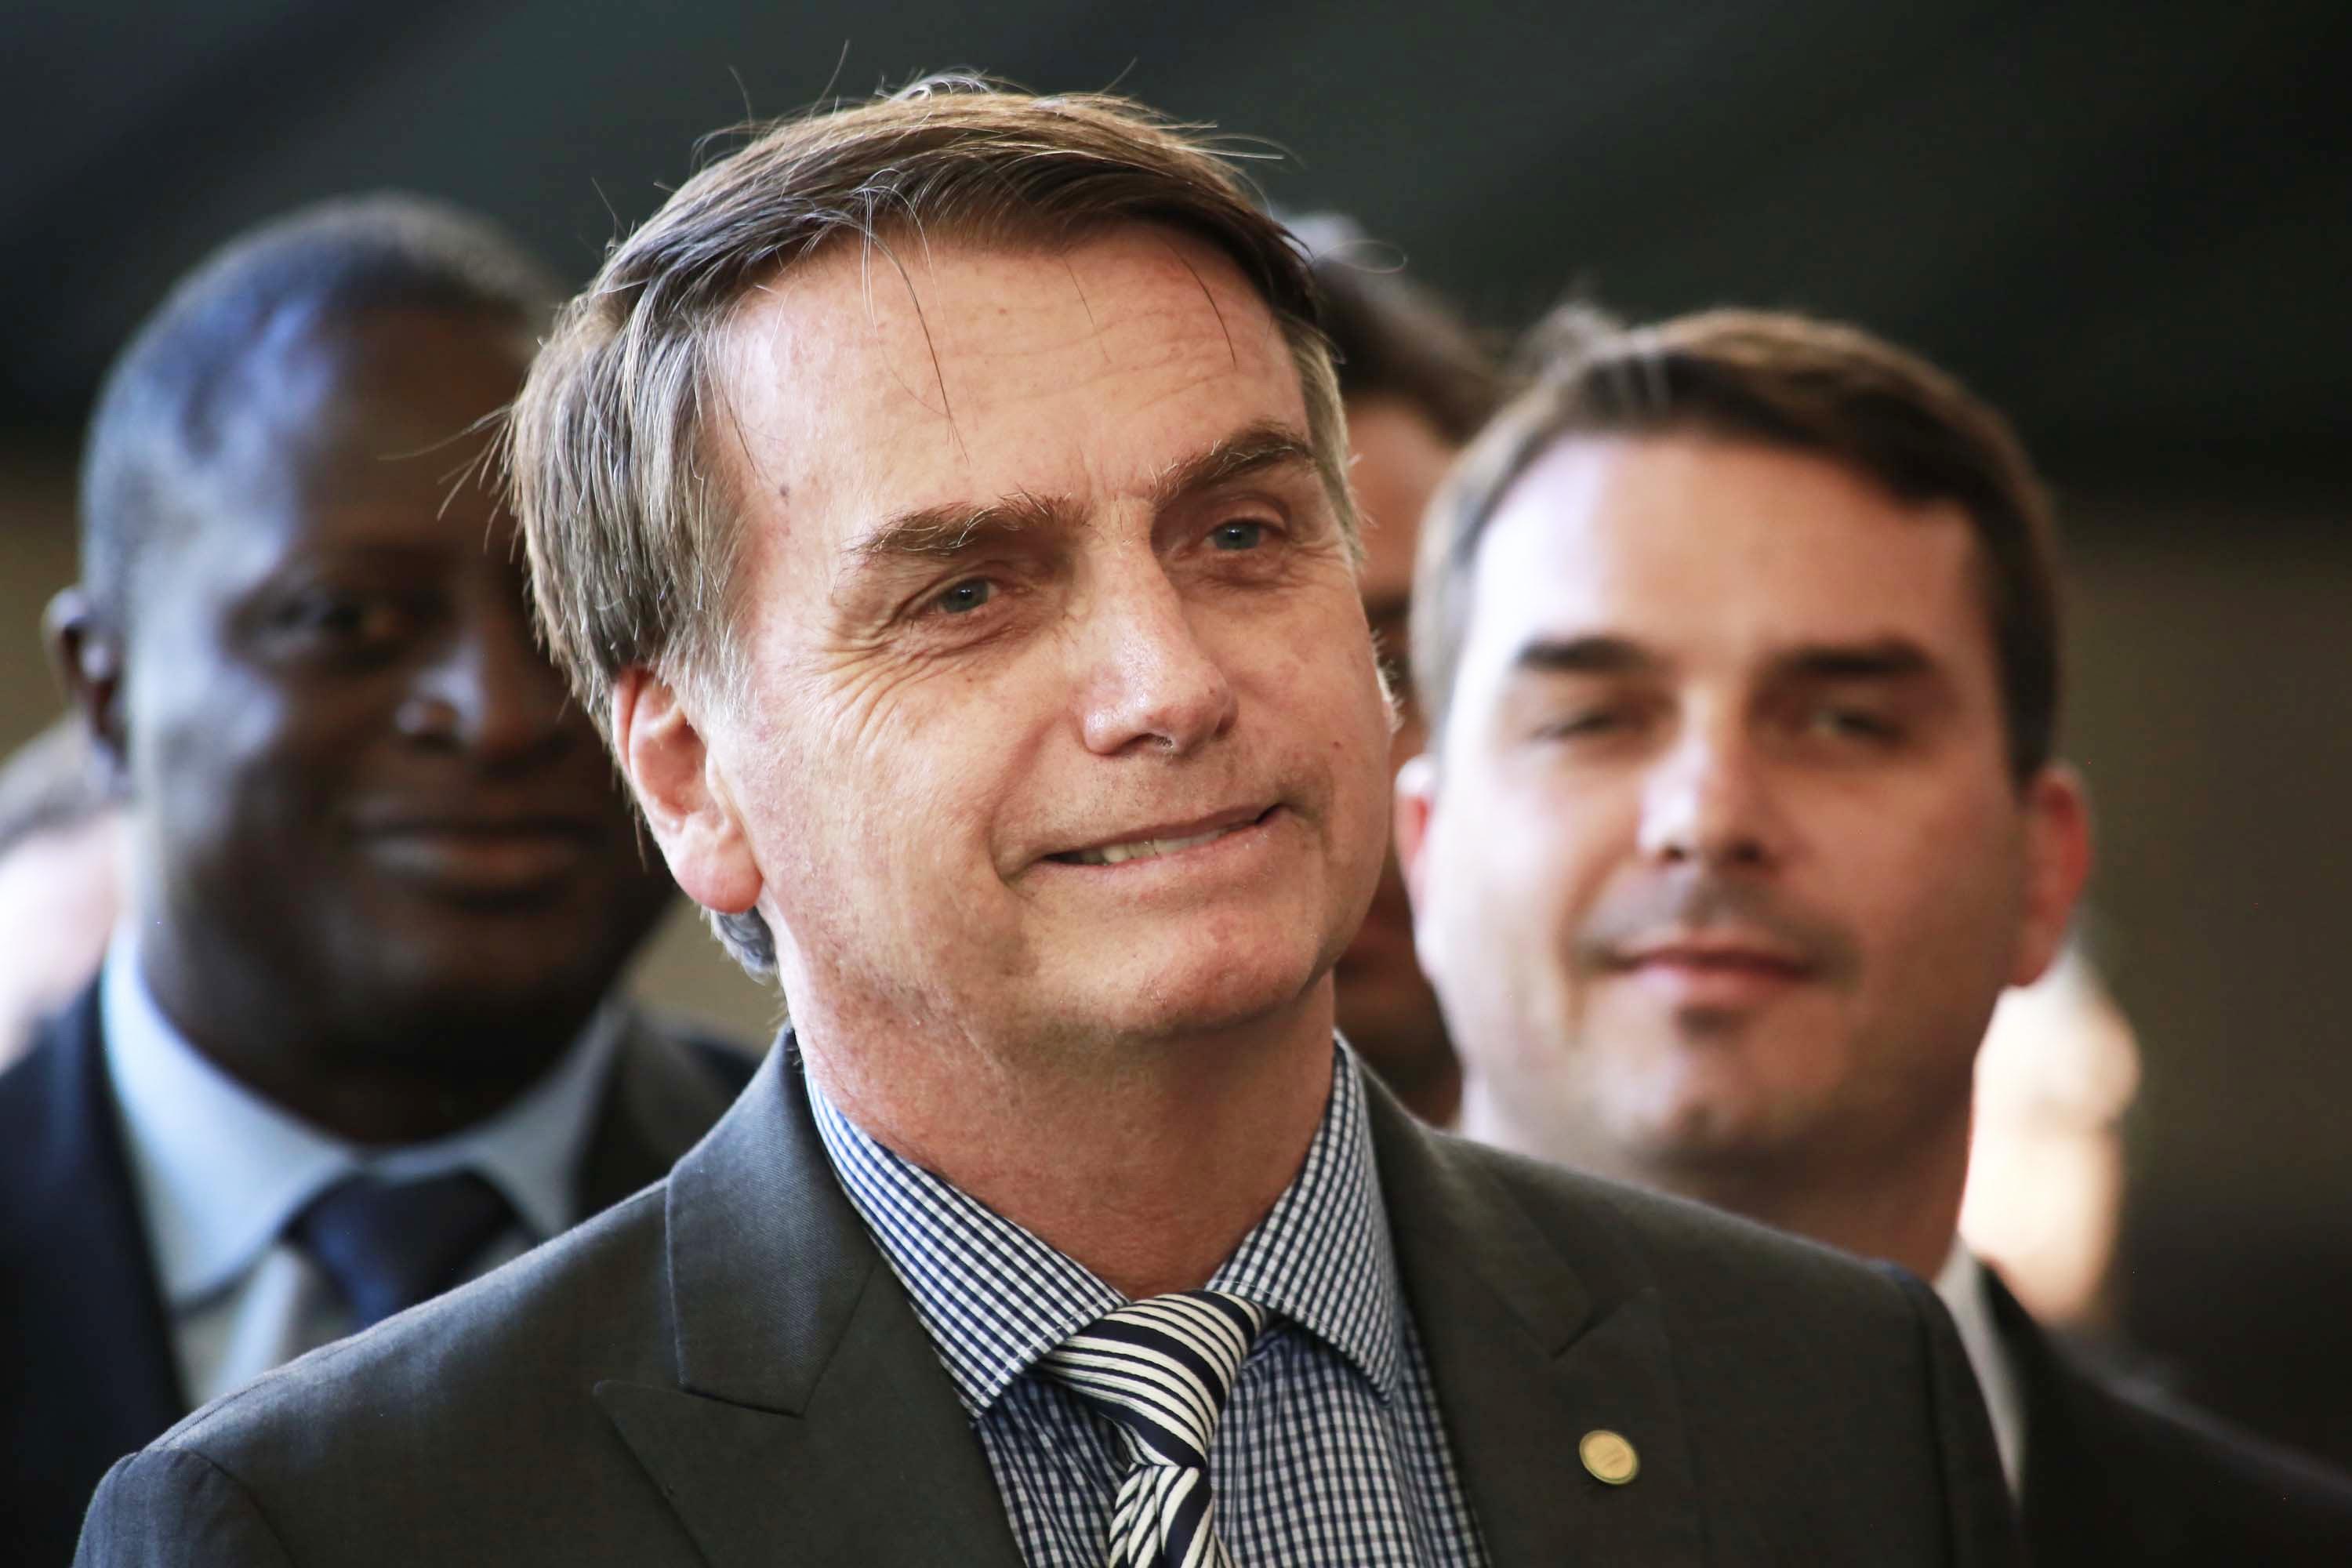 Bolsonaro voljan pregovarati da SAD omogući vojnu bazu u Brazilu